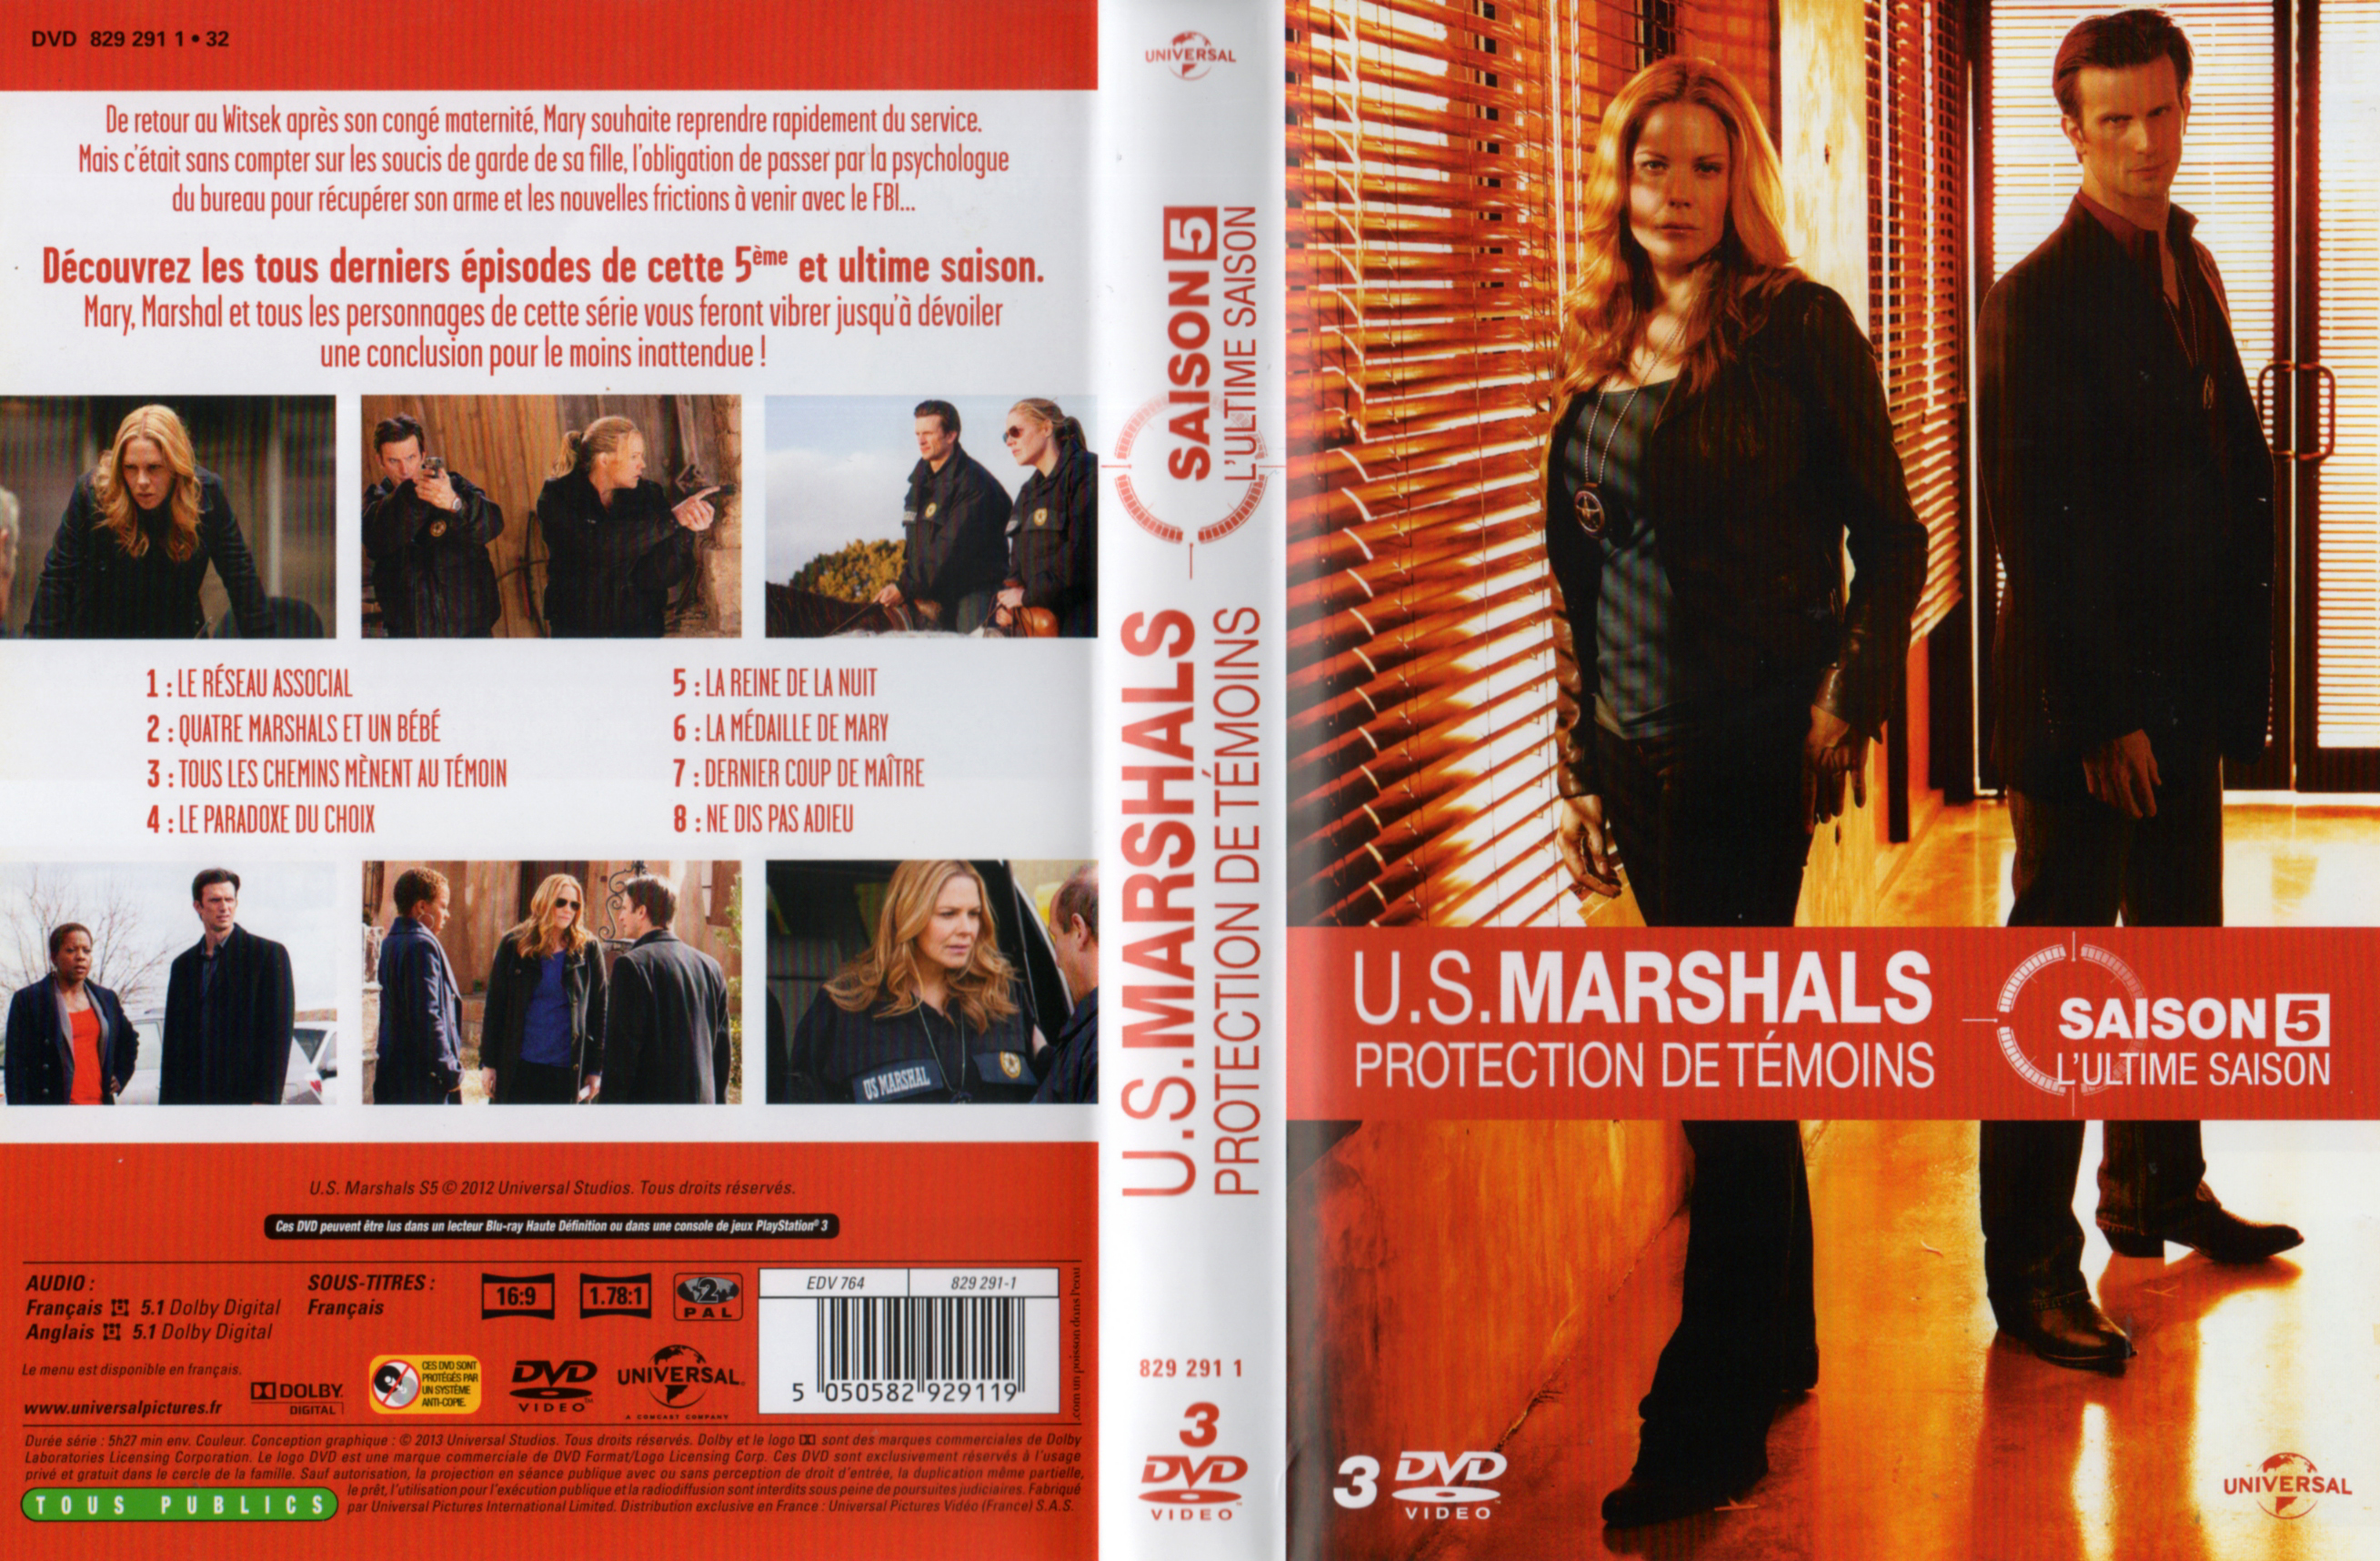 Jaquette DVD US marshals rotection de tmoins Saison 5